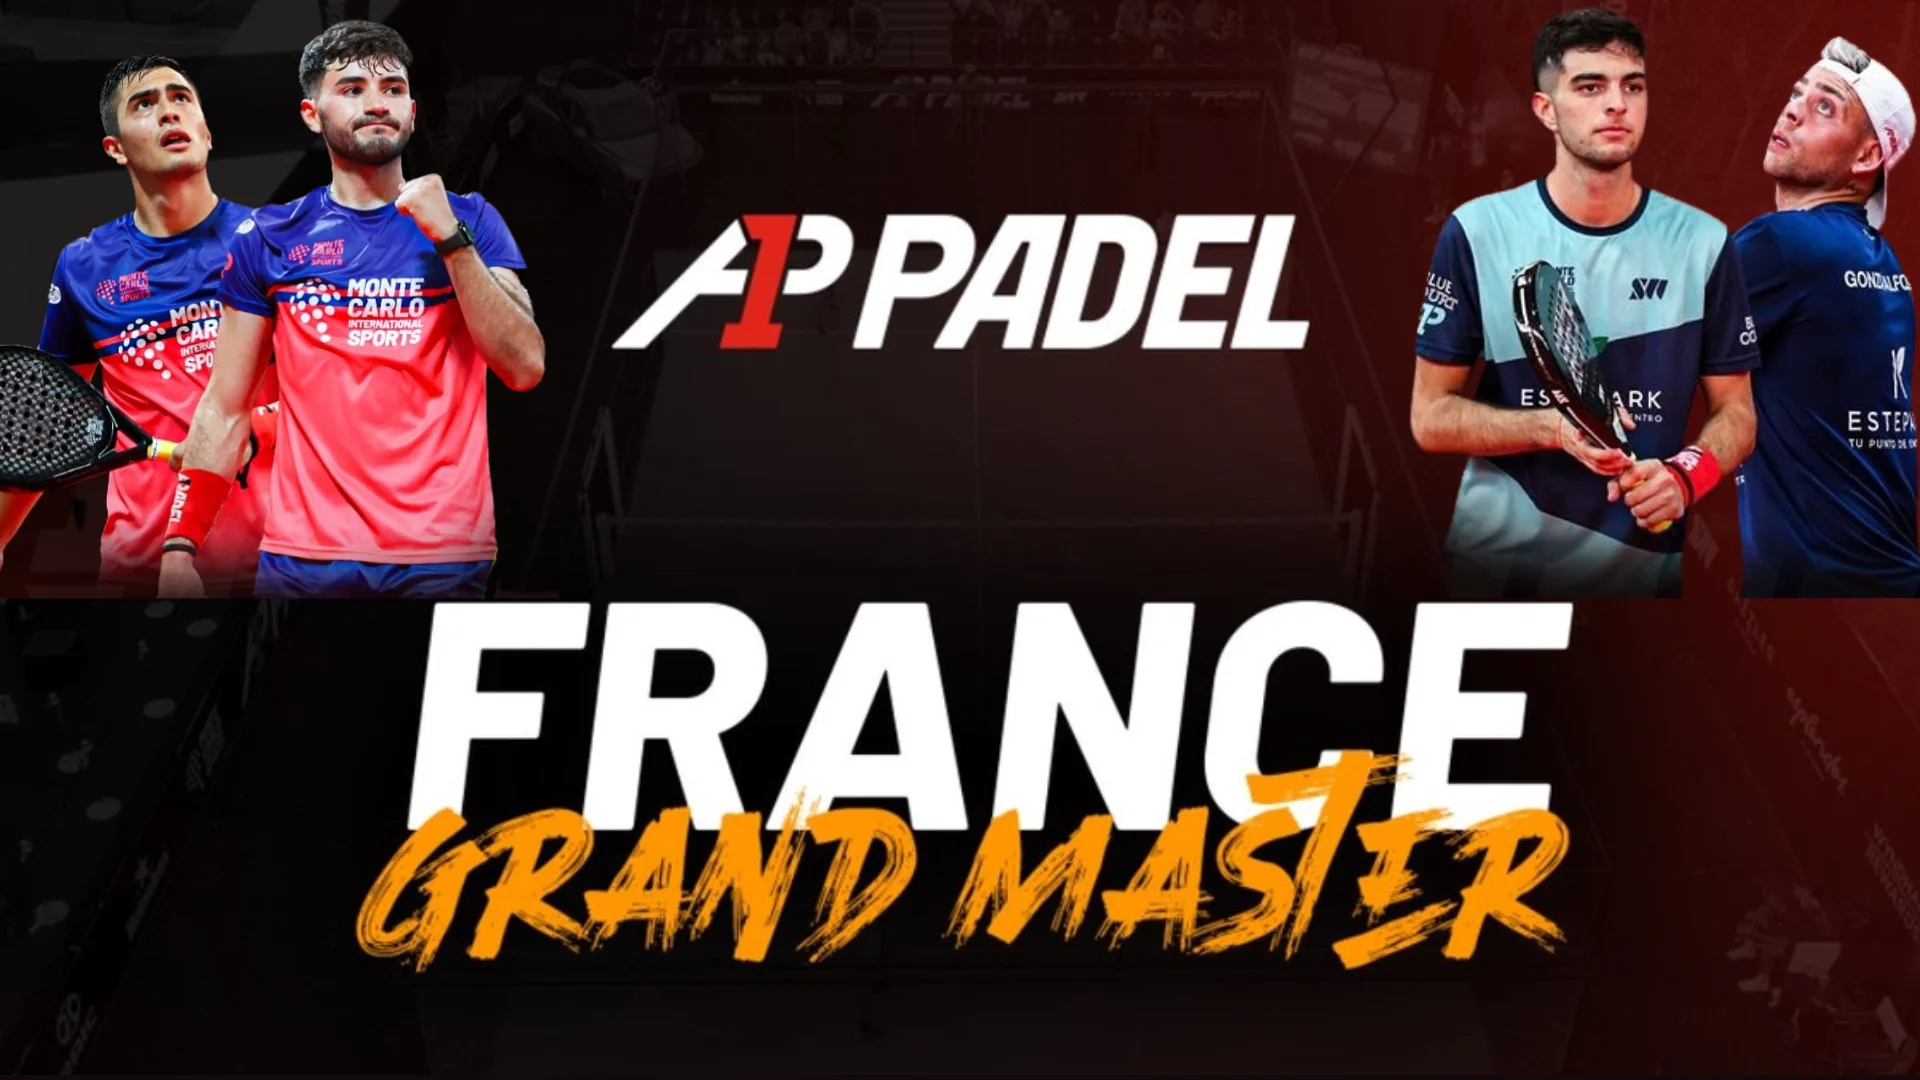 A1 Padel フランスグランドマスター – デ・パスクアル/アルフォンソ、決勝でダル・ビアンコ/アルセと対戦